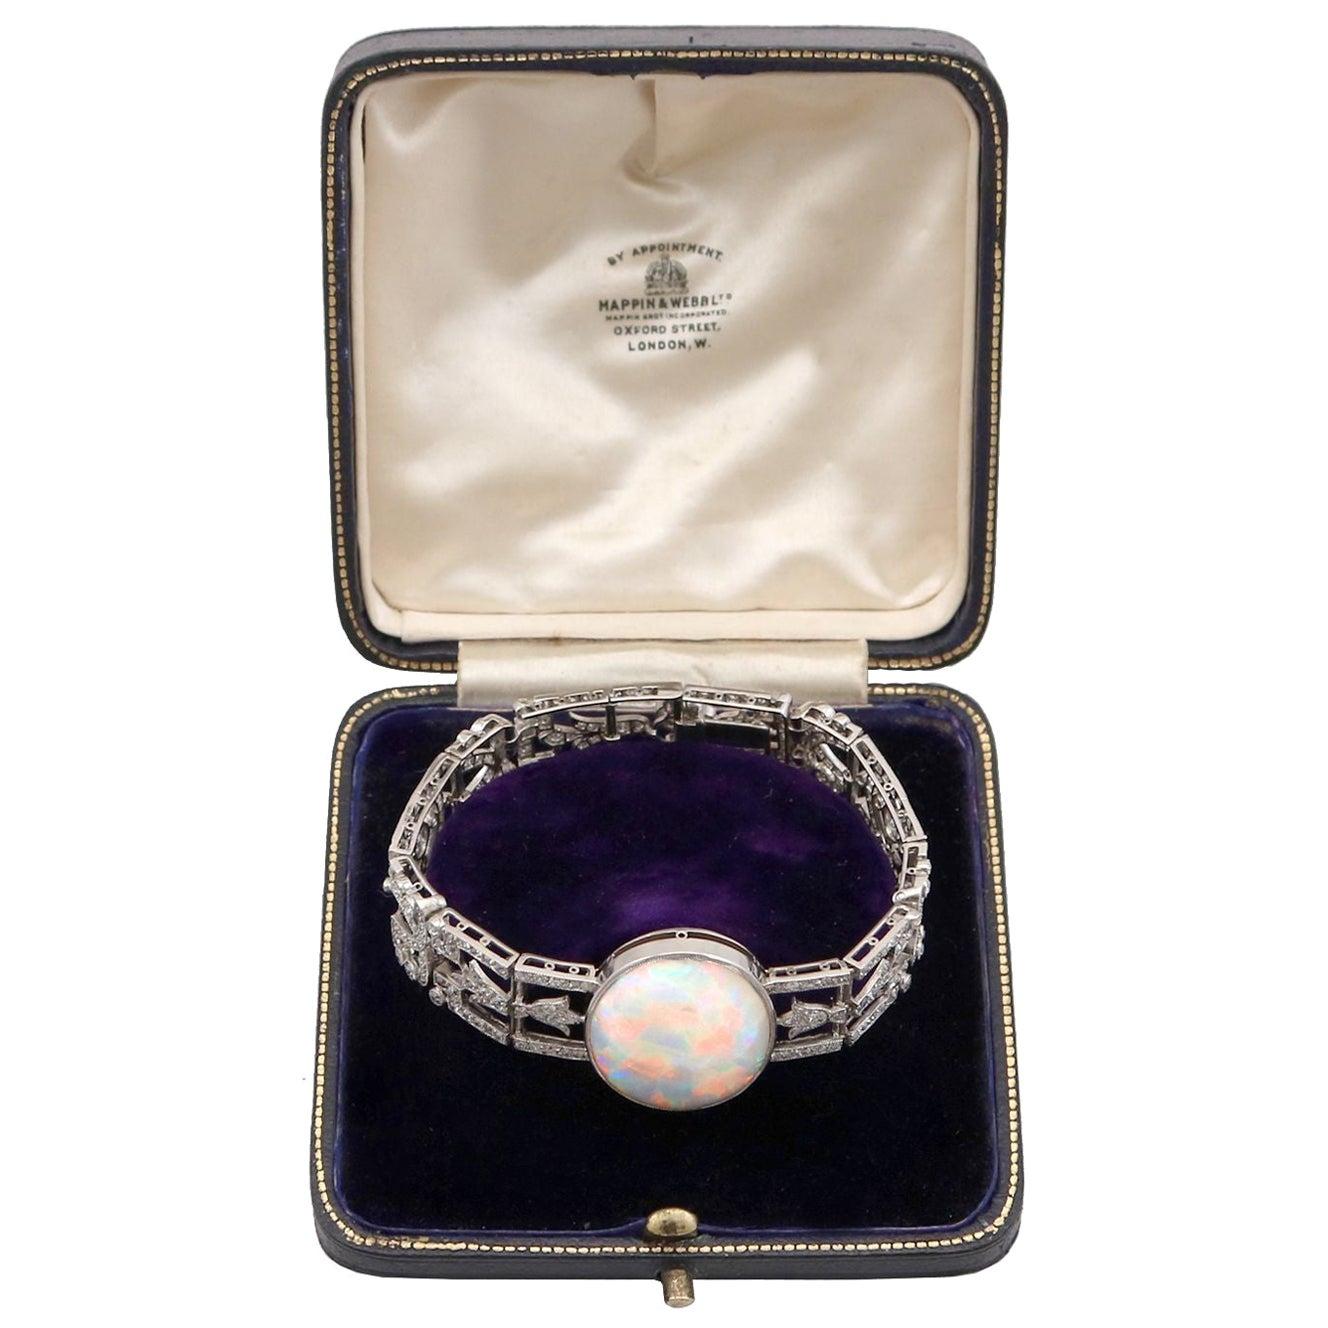 Antique Opal Bracelet - 24 For Sale on 1stDibs